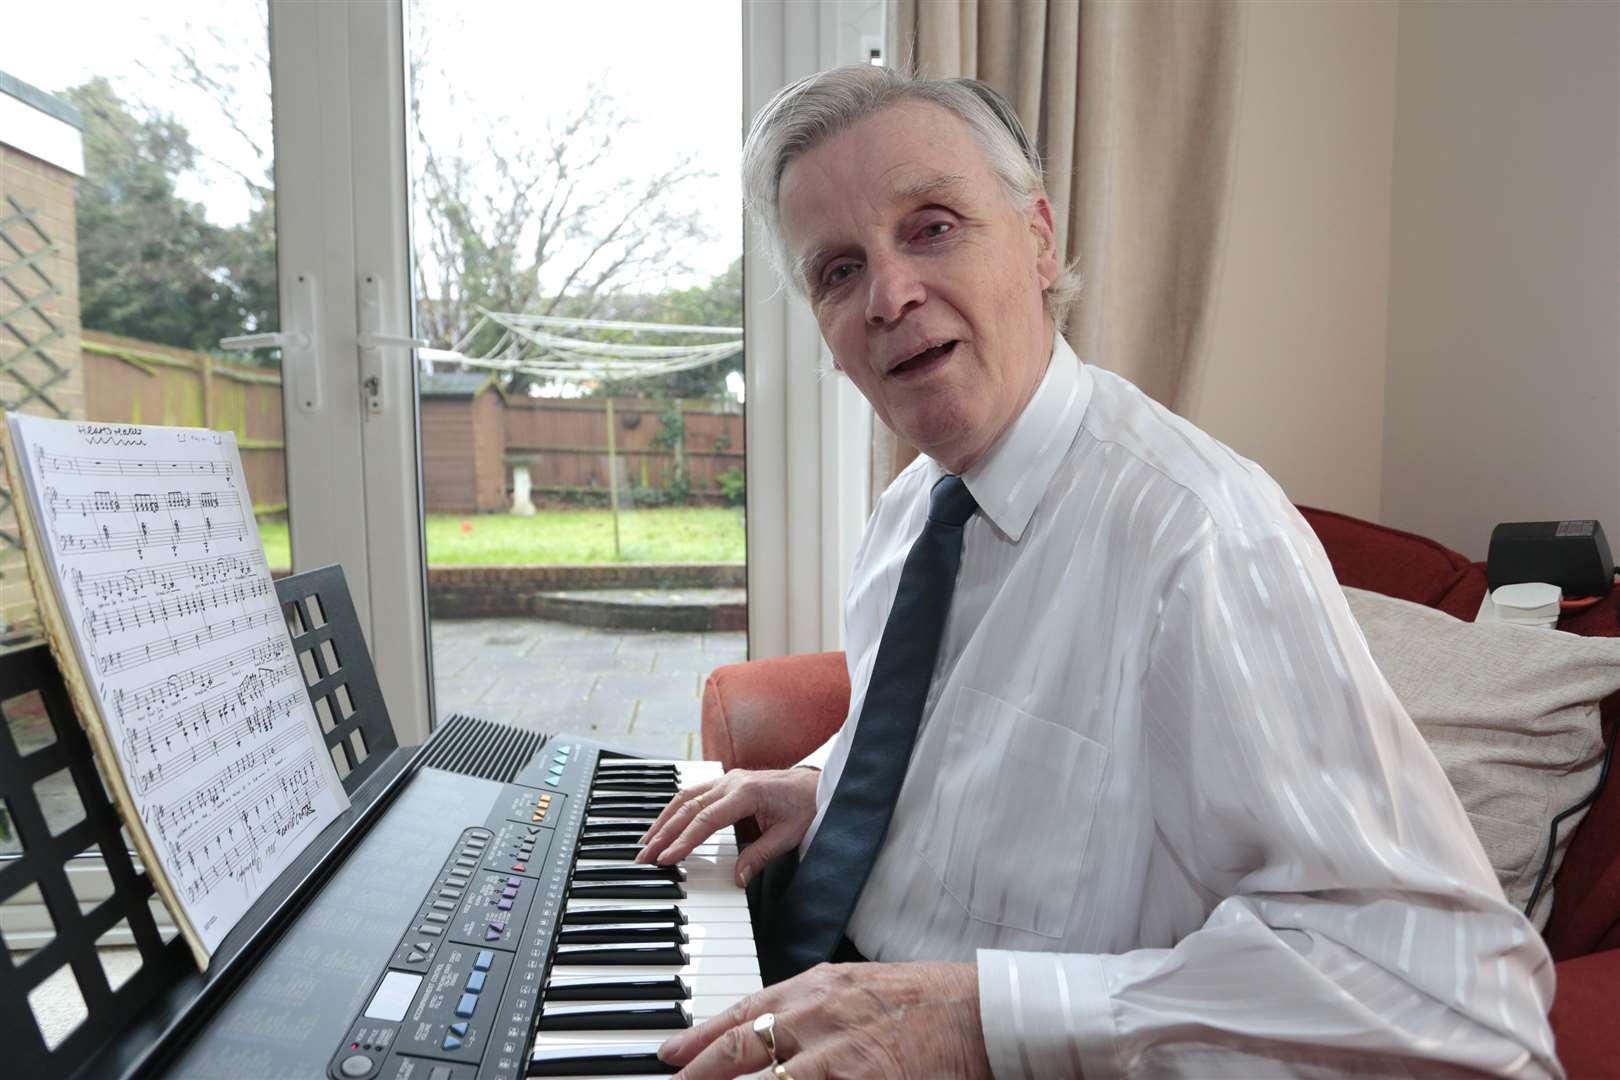 David Coates at his keyboard